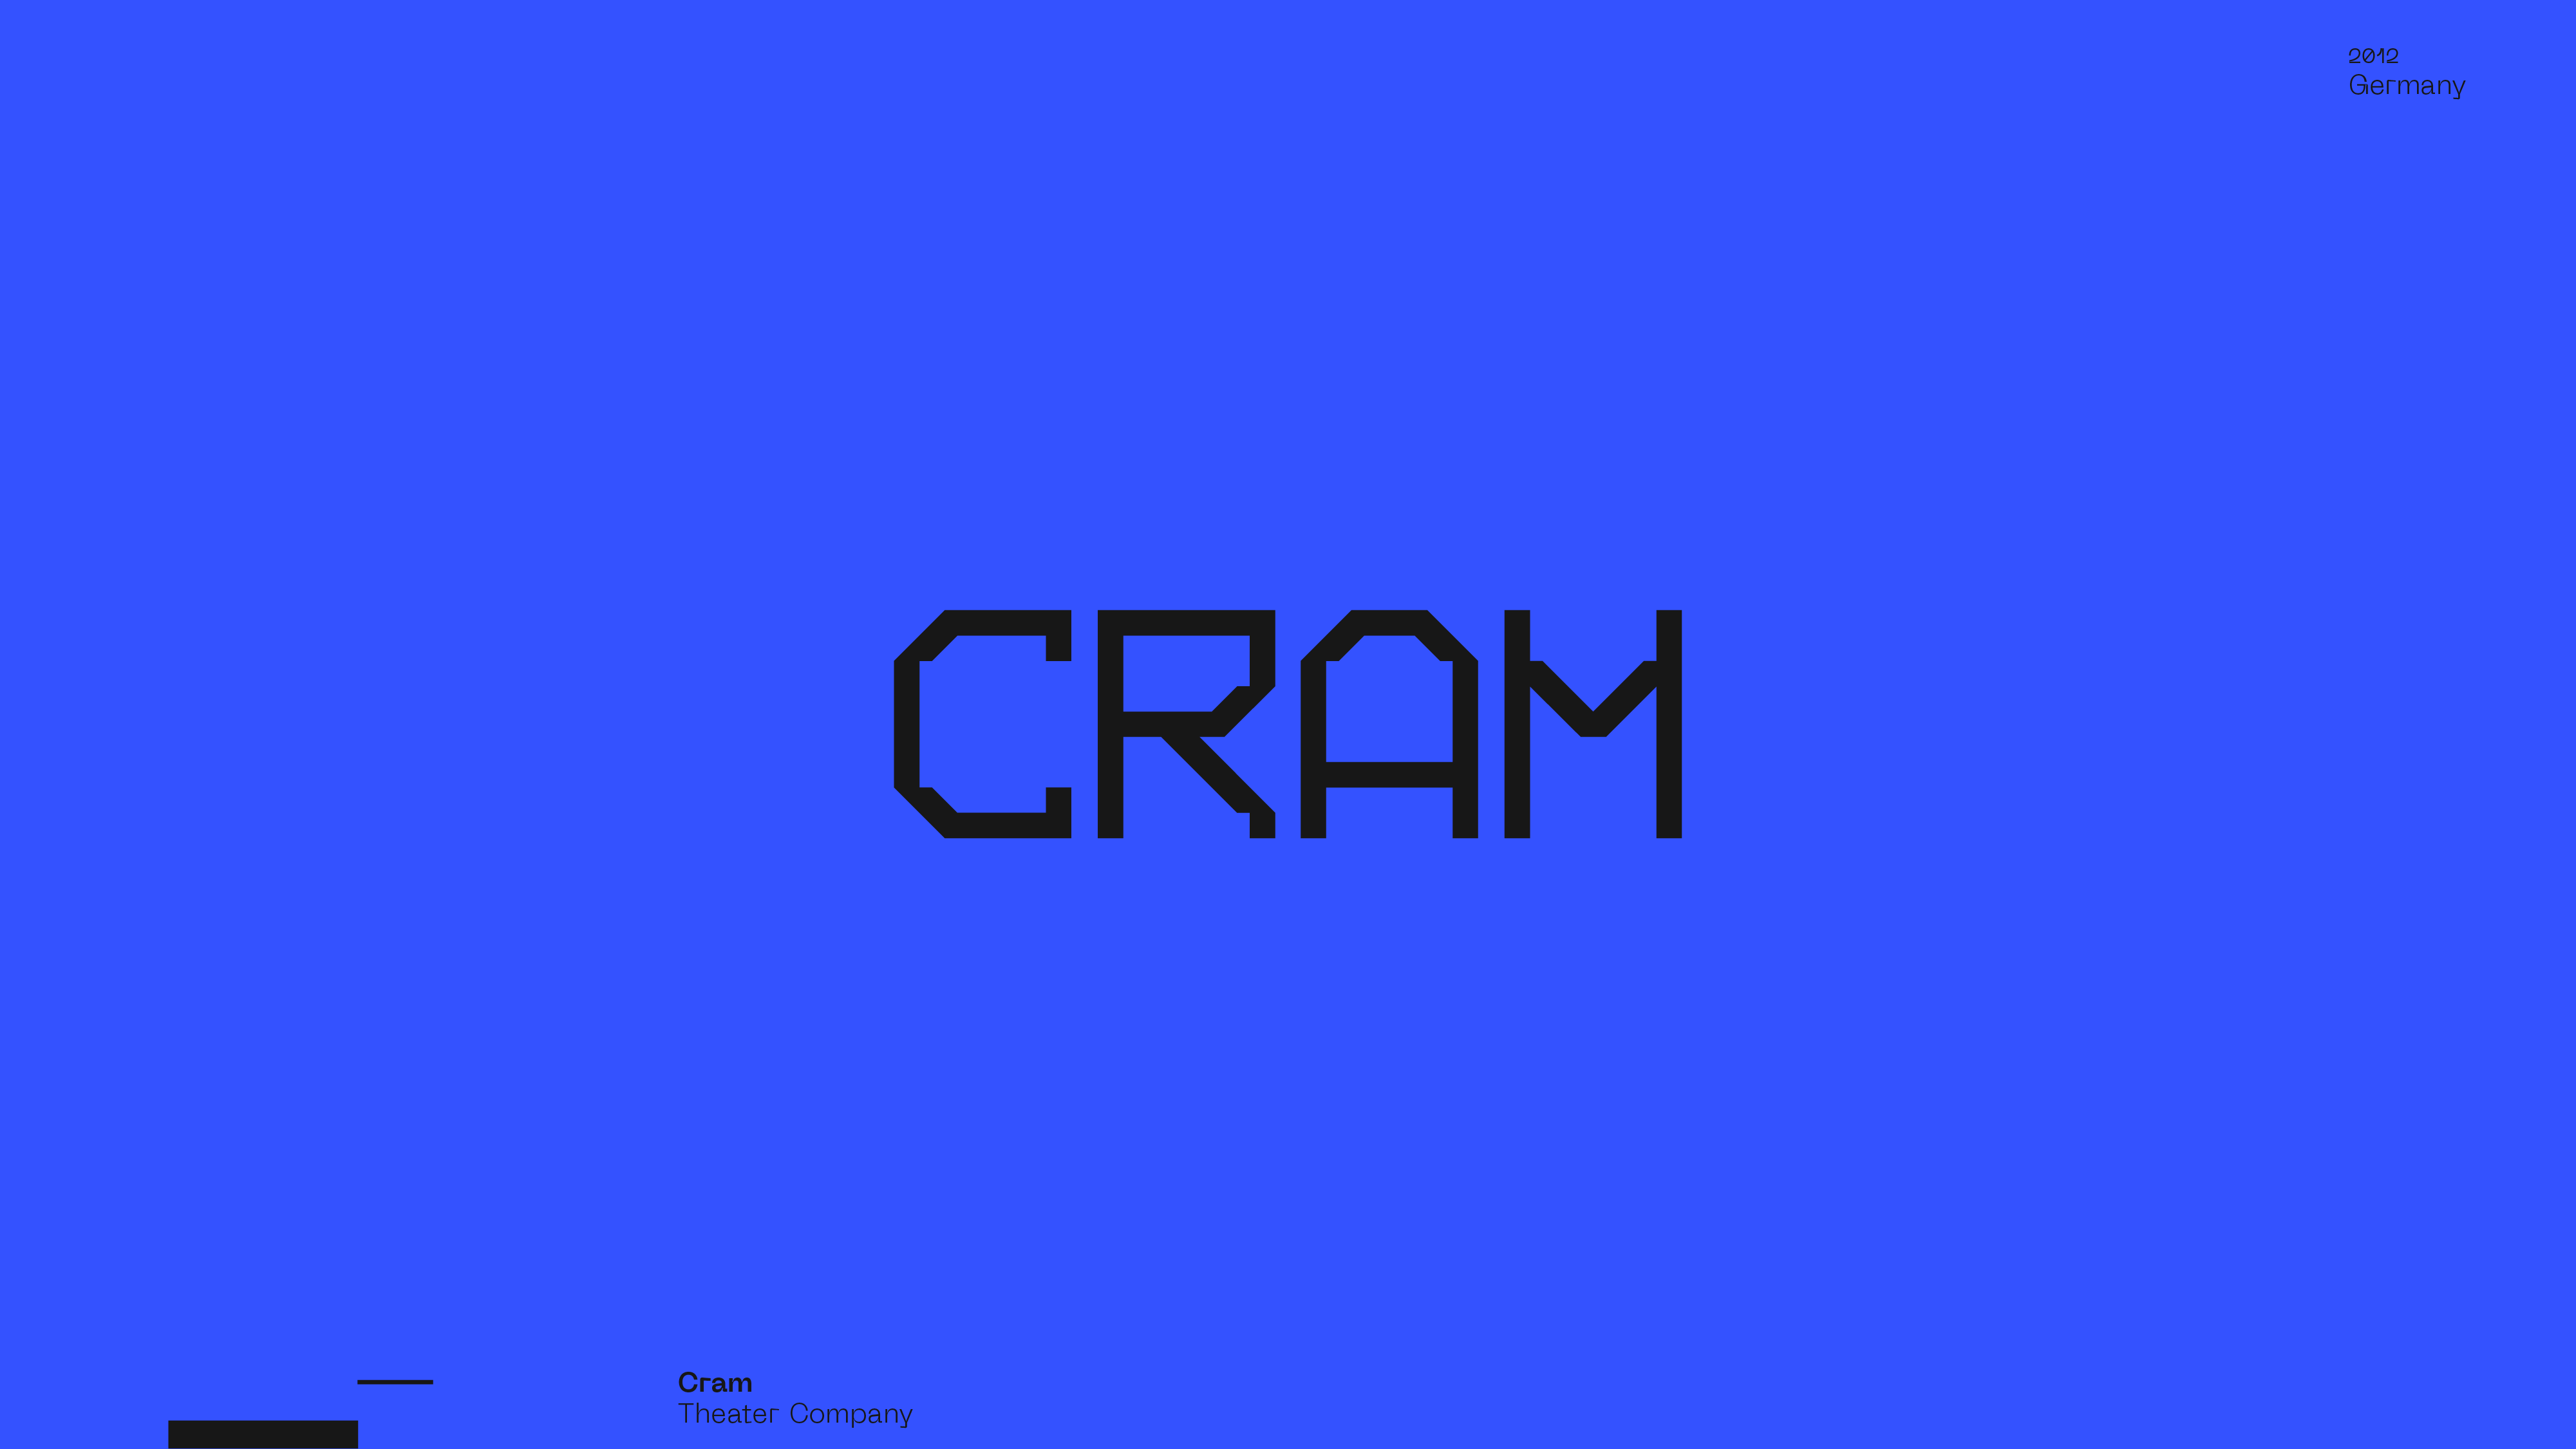 Guapo Design Studio by Esteban Ibarra Logofolio — CRAM